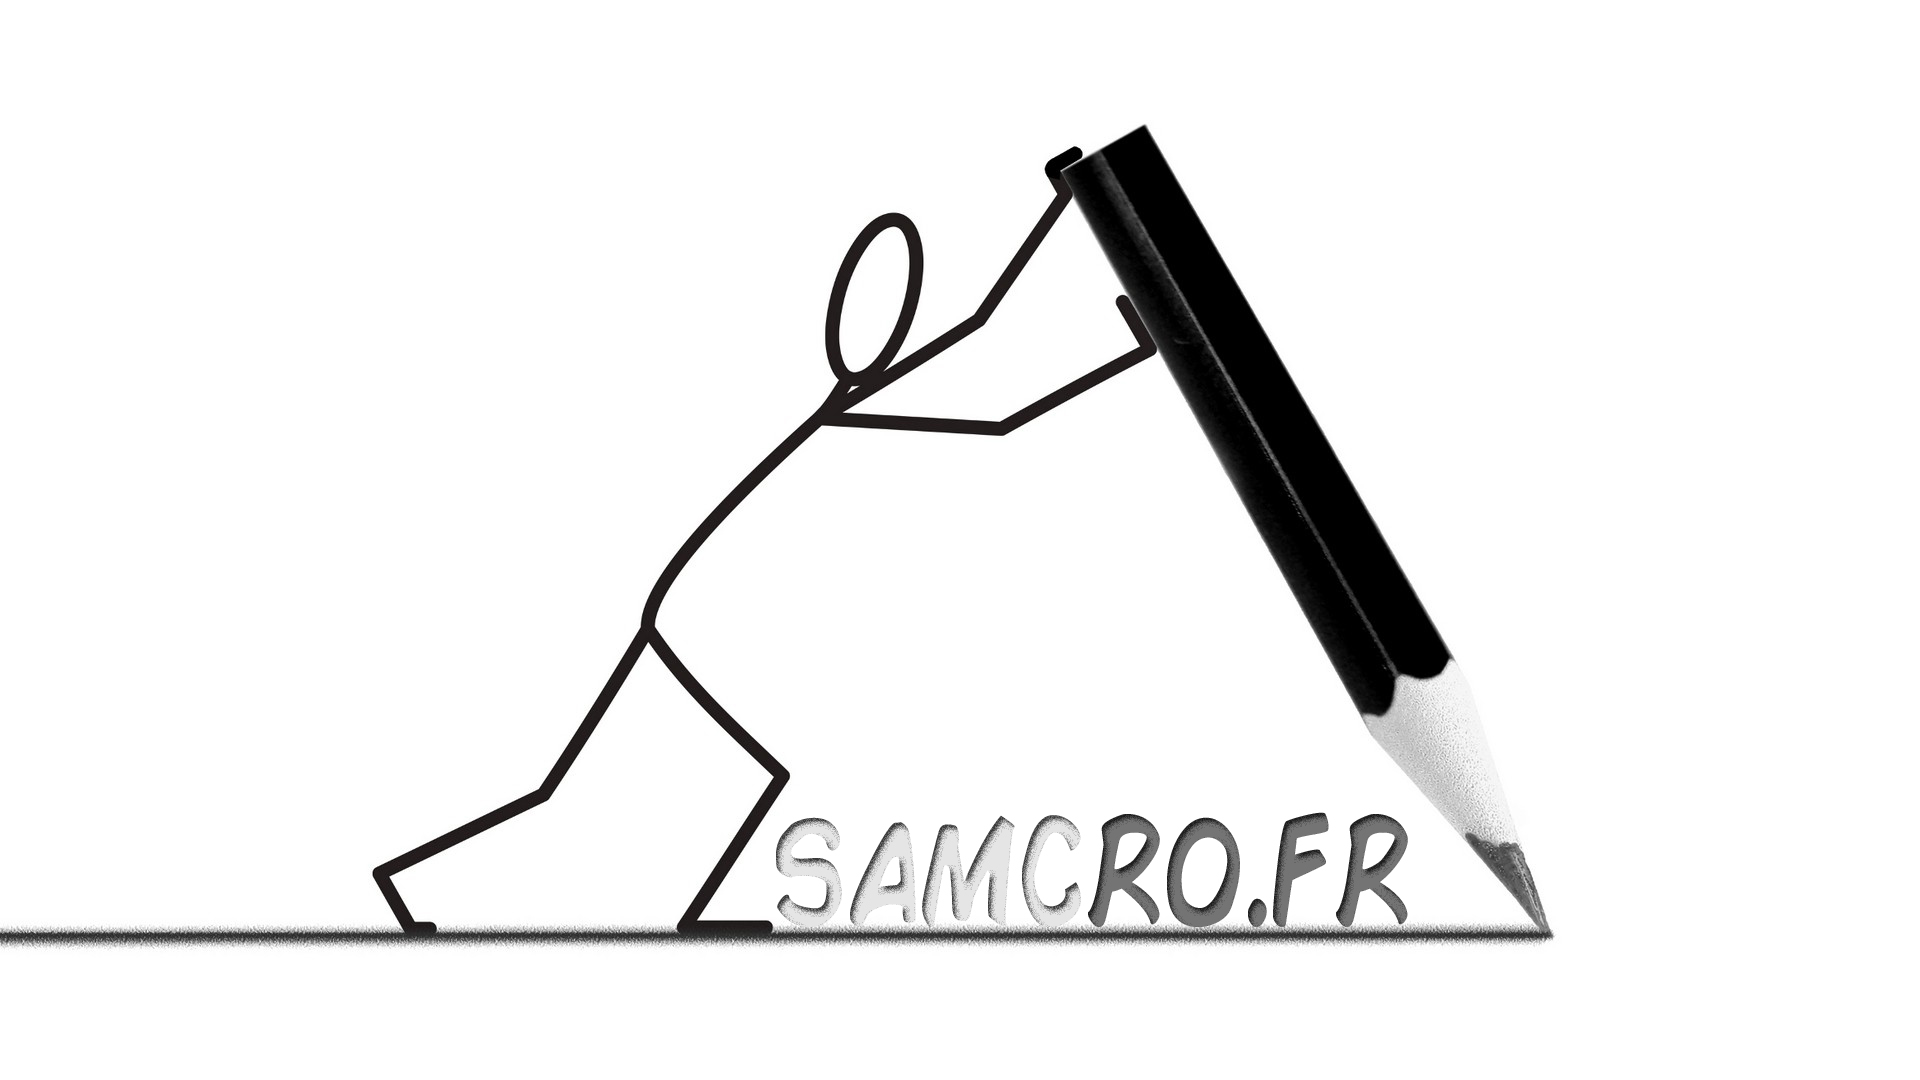 samcro.fr Samcro.Fr